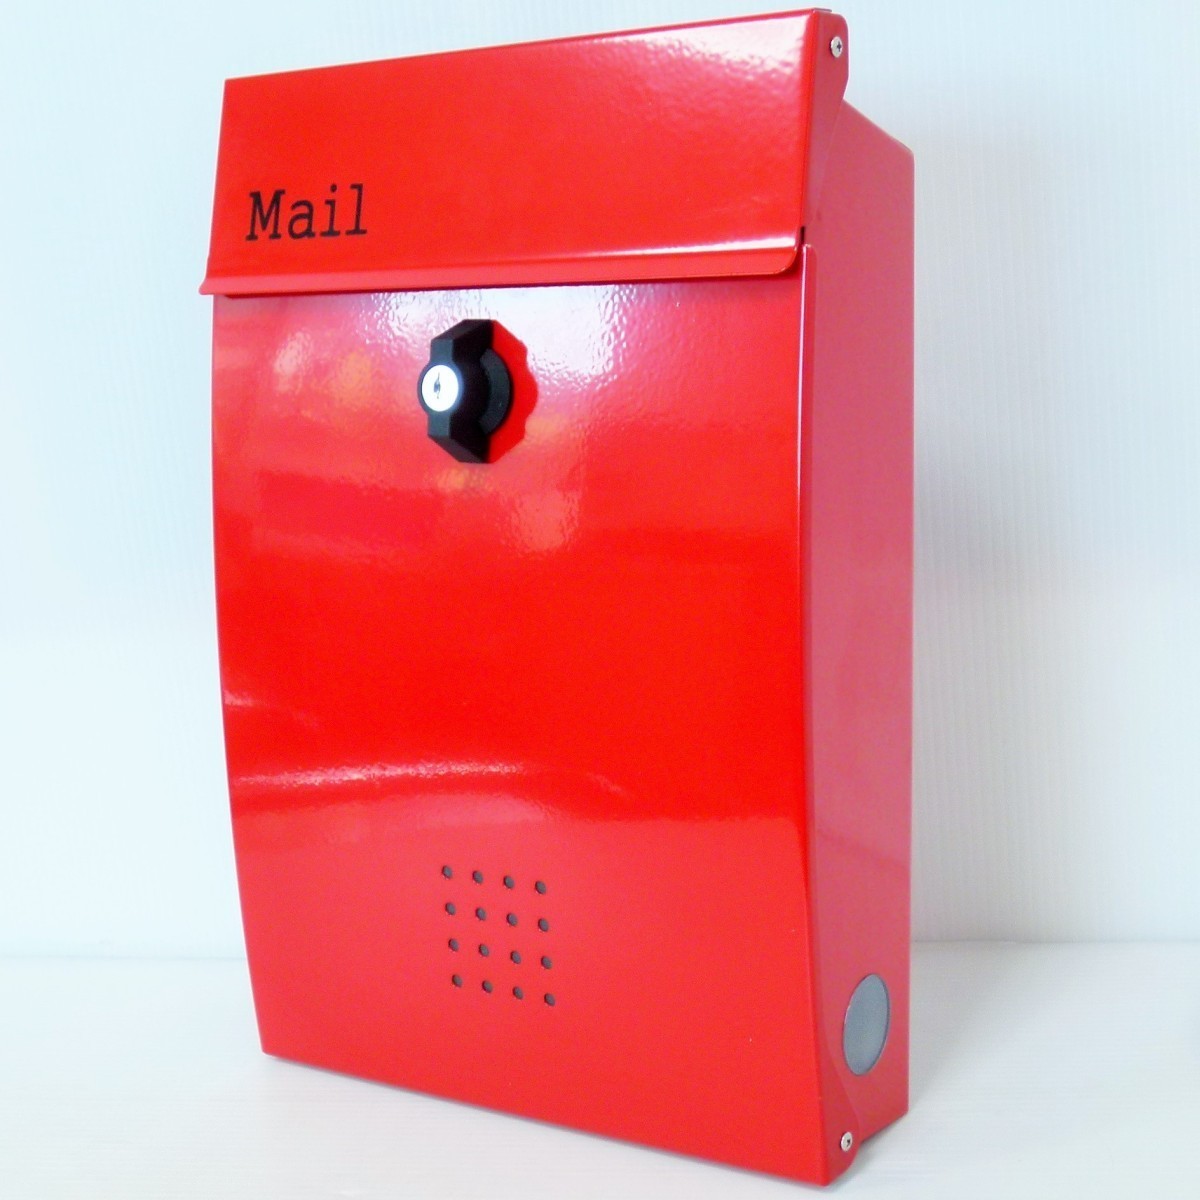 セール3月31日まで 郵便ポスト郵便受けおしゃれかわいい人気北欧メールボックス壁掛けプレミアムステンレスレッド赤色ポストpm135